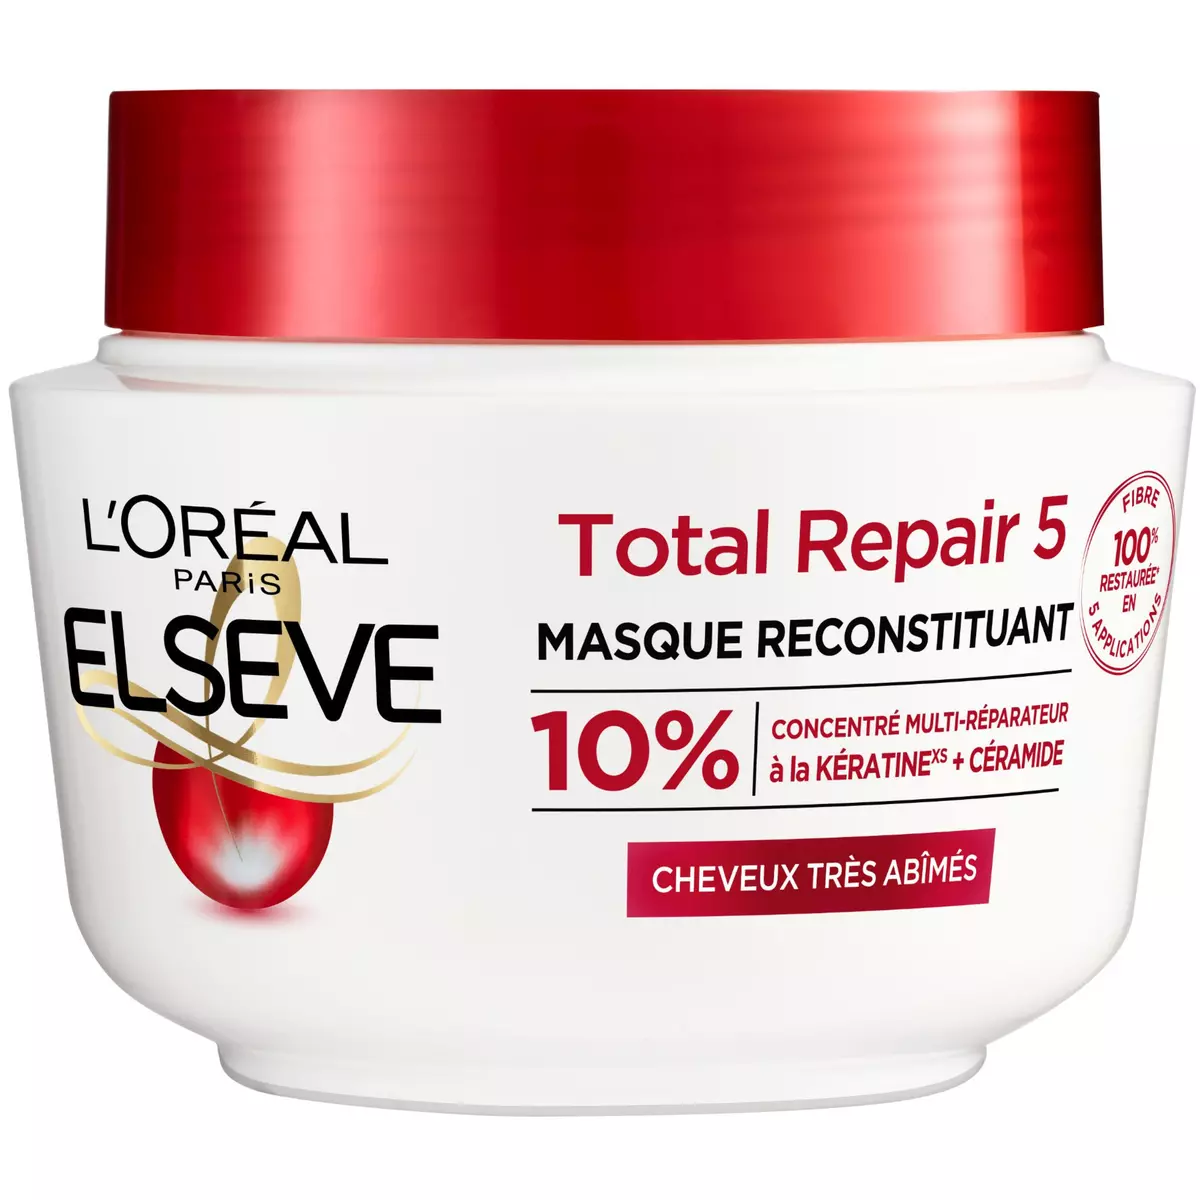 ELSEVE Total repair 5 masque reconstituant cheveux très abîmés 310ml